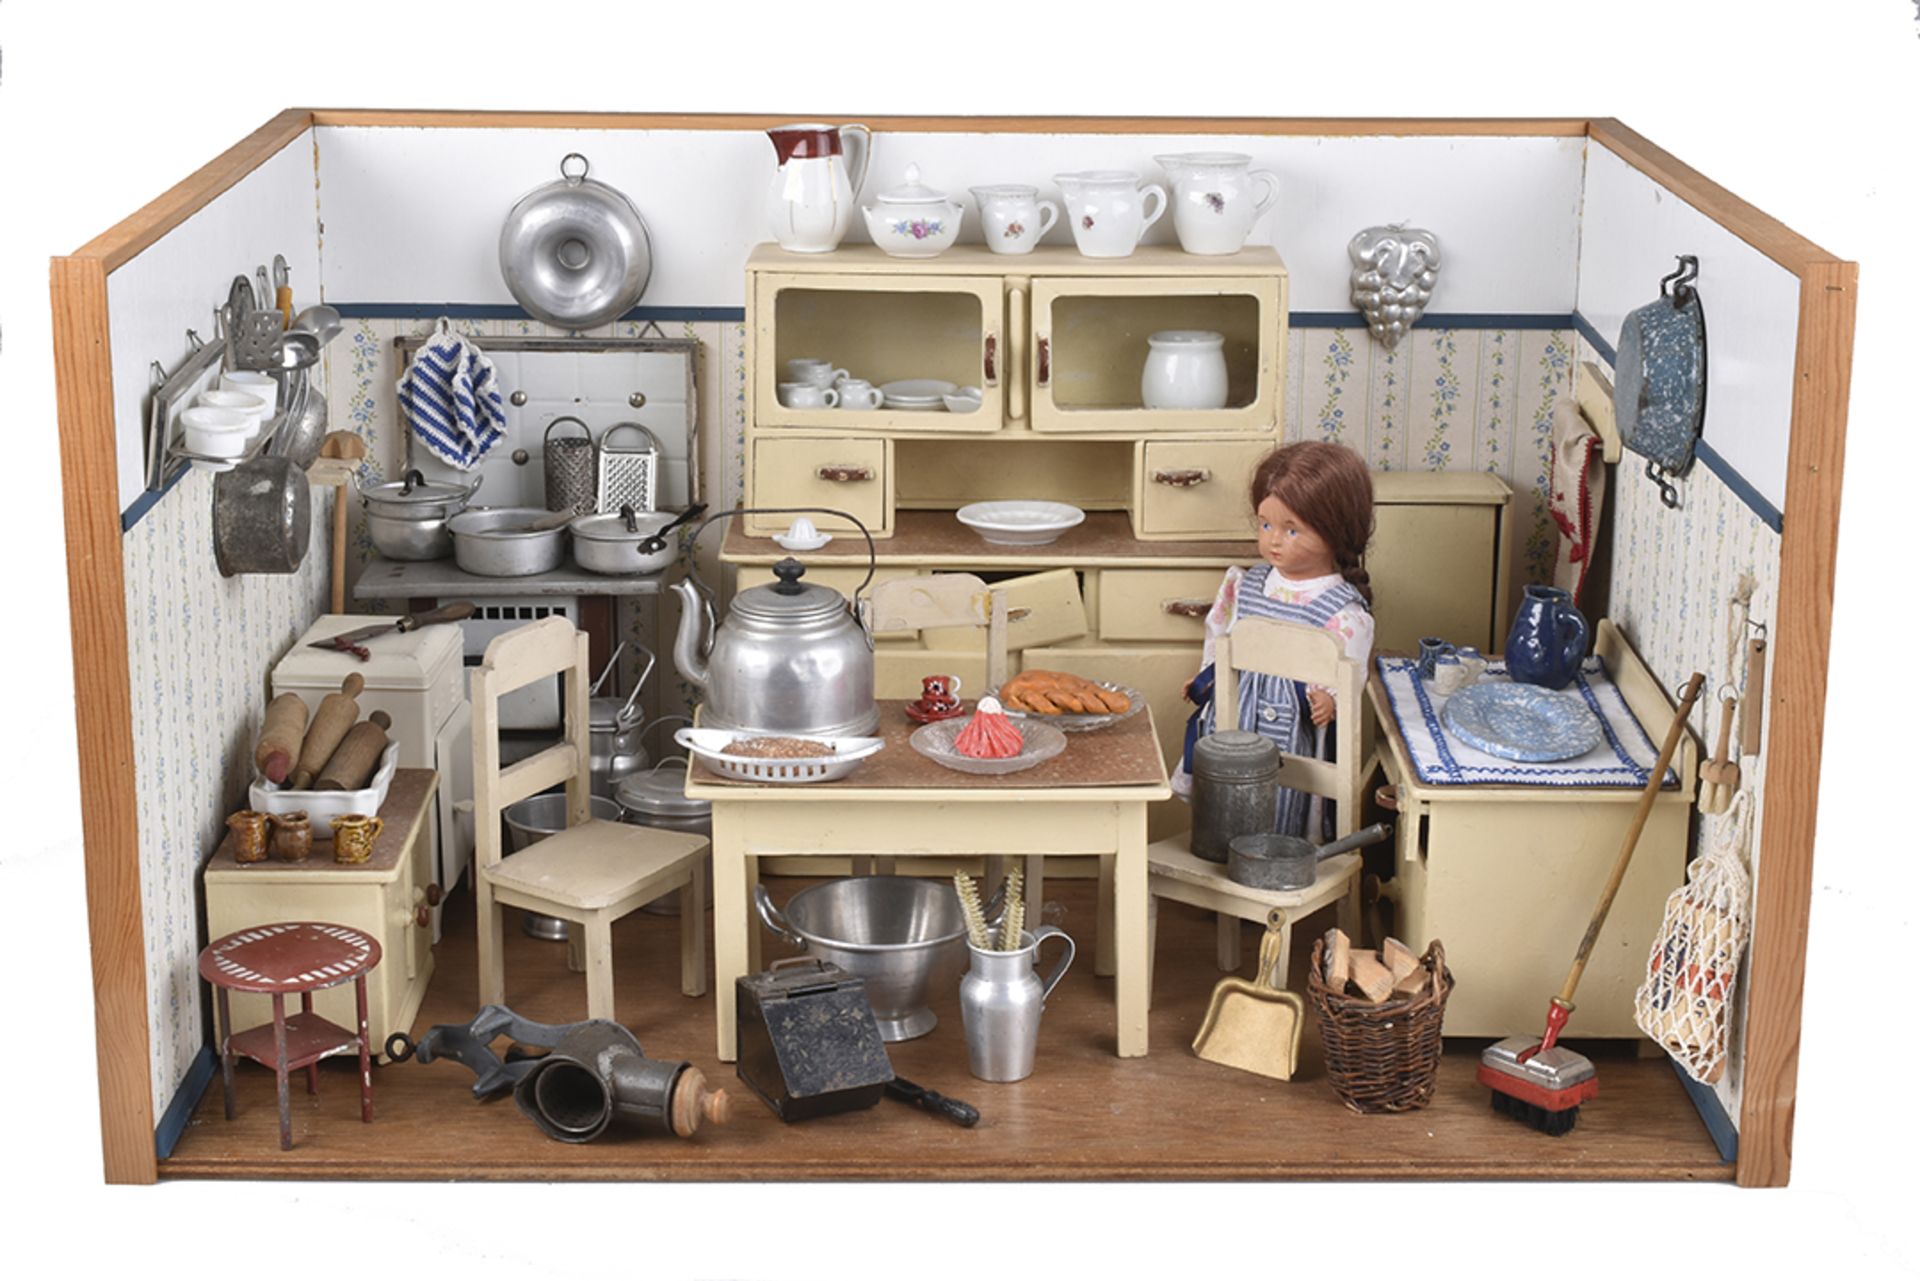 PuppenkücheHolzgehäuse, 66x45x39 cm, Wandtapete, bestückt mit Küchenmöbeln, Schrank, Besenschrank,